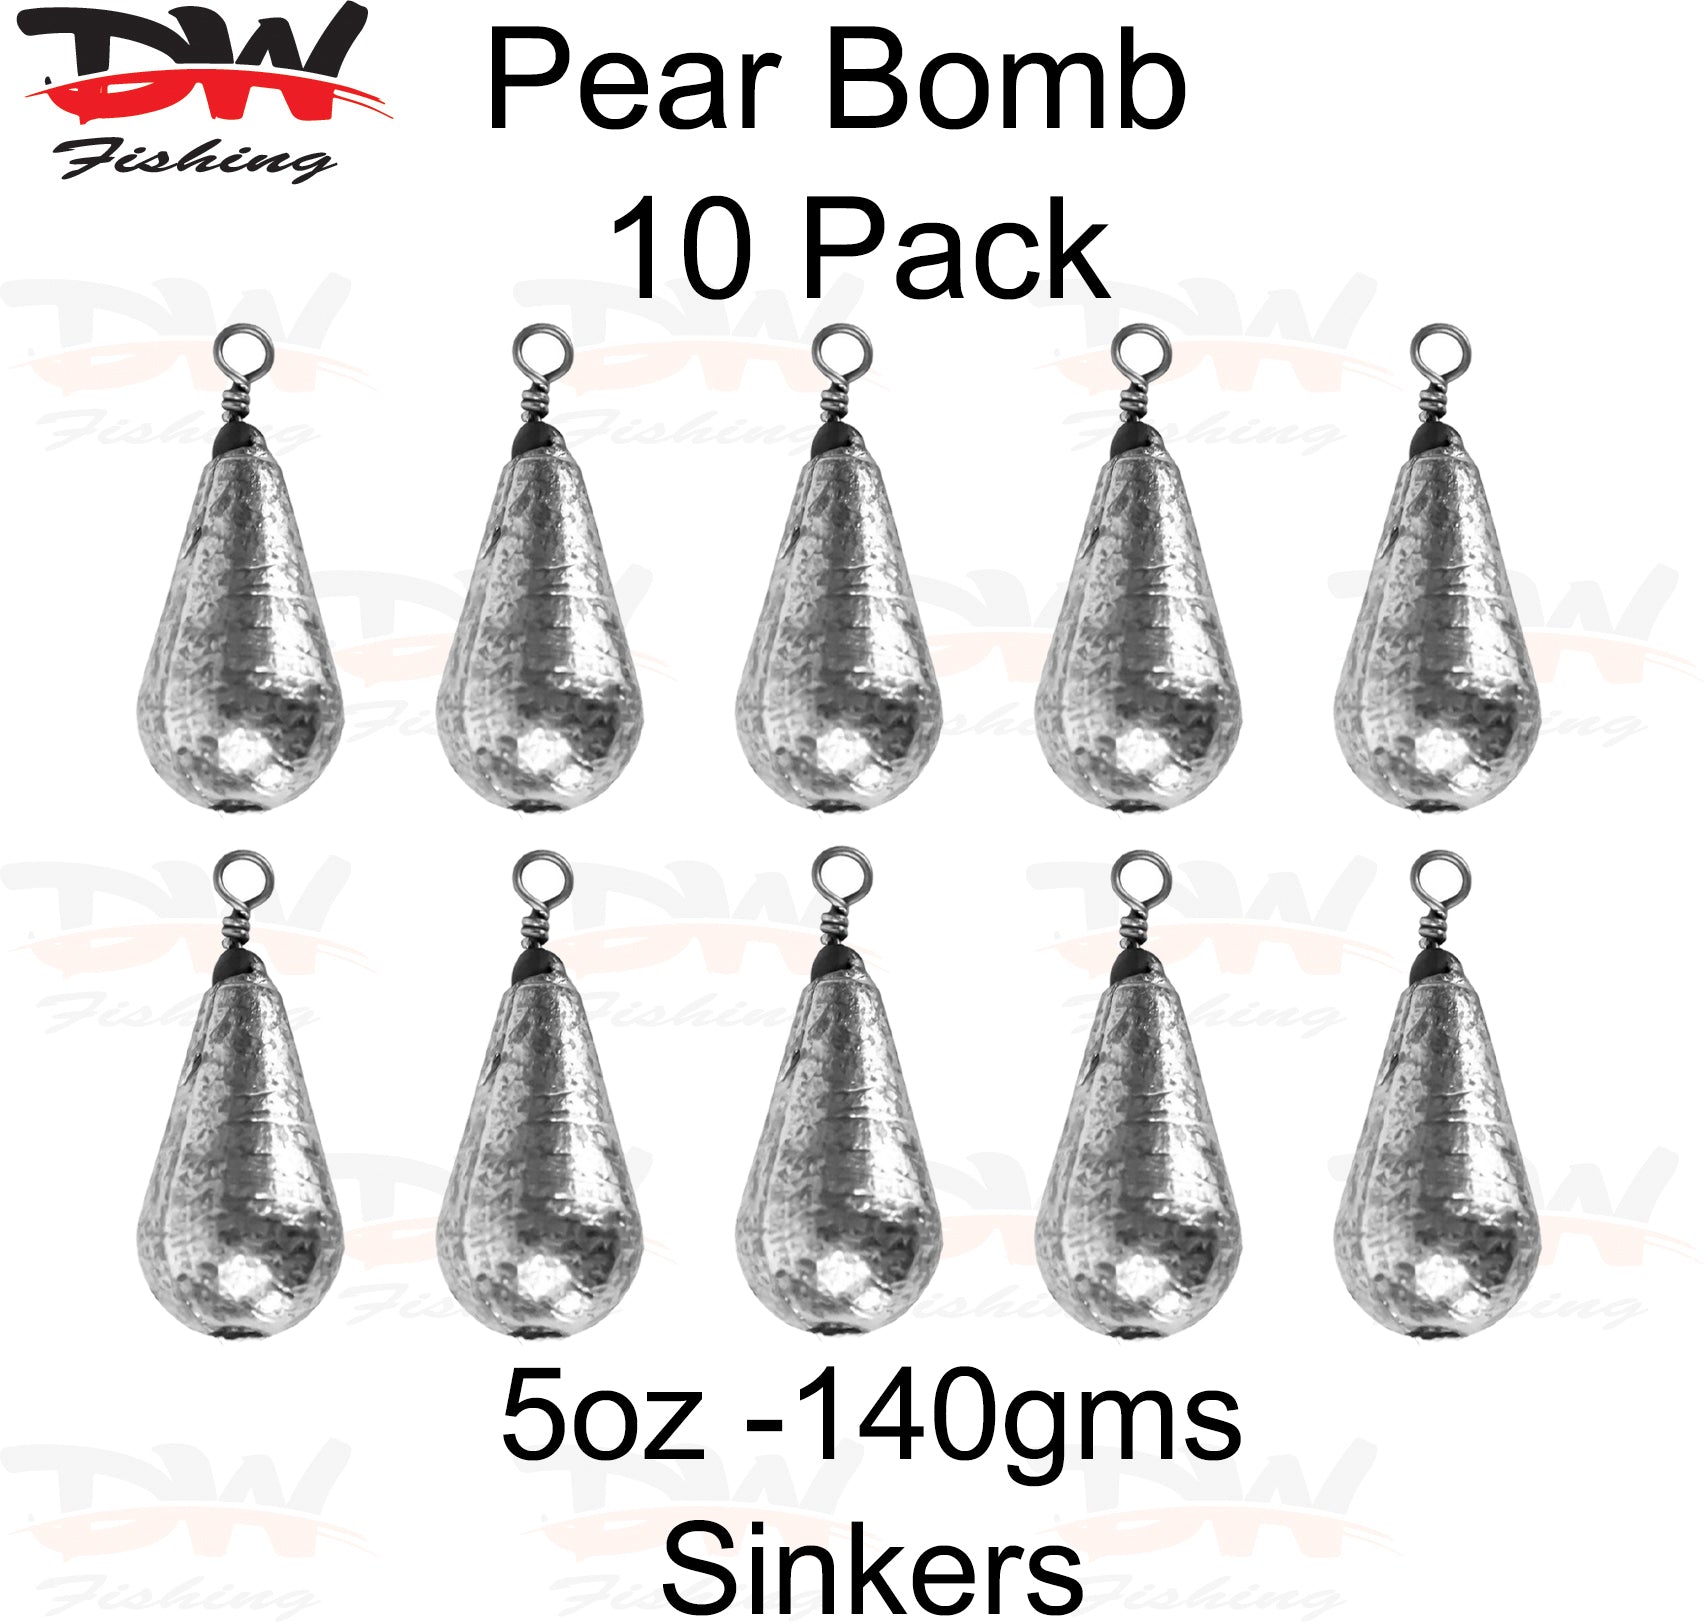 Pear bomb reef sinker 5oz-140gms 10 pack